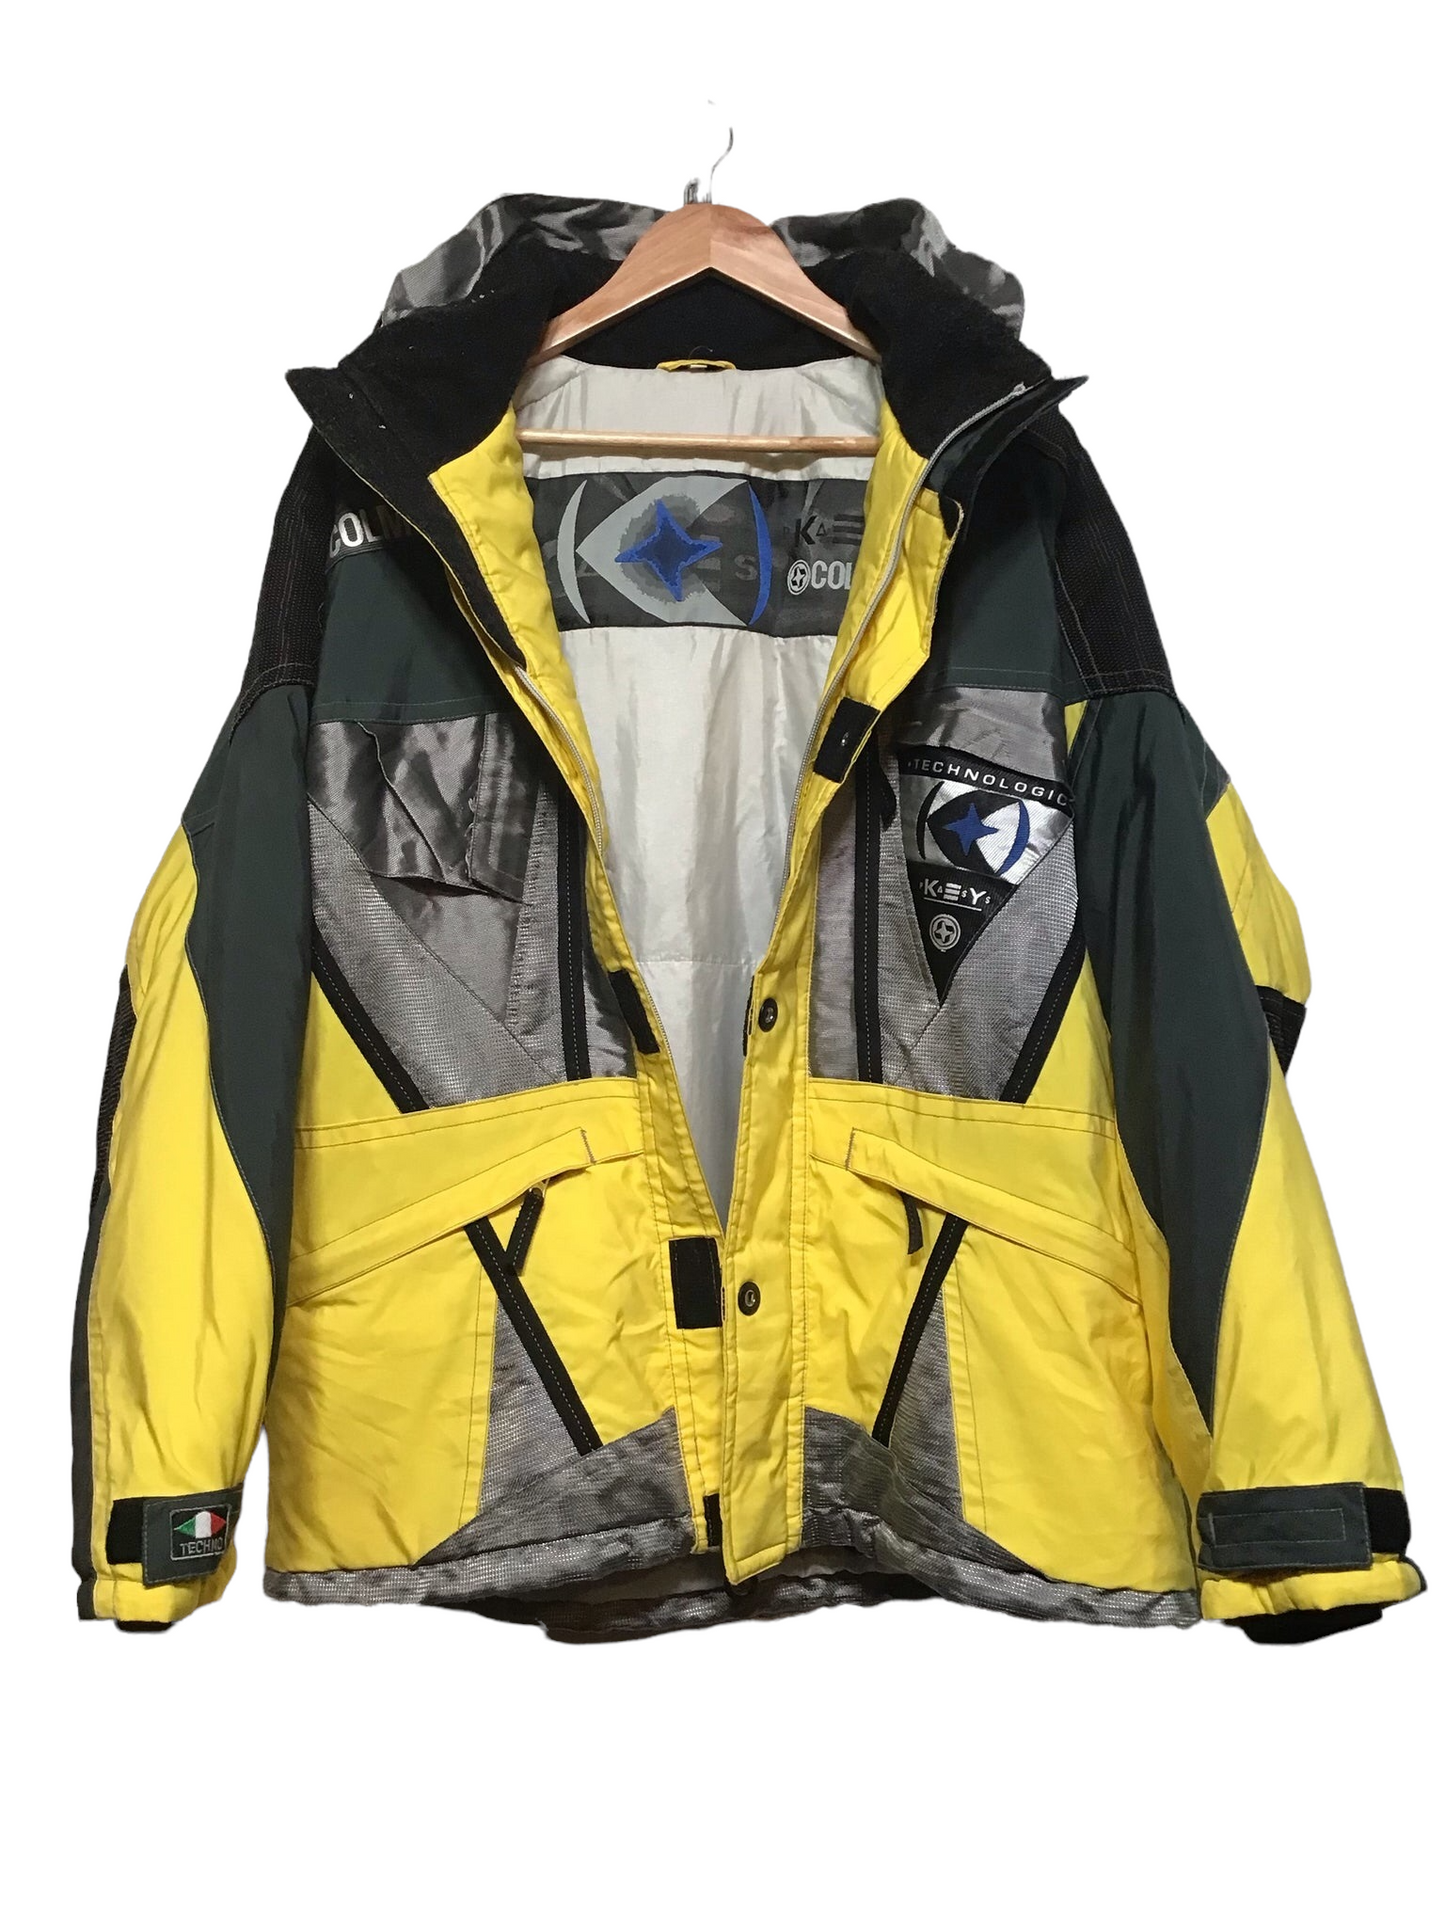 Colmar Yellow Ski Jacket (Size XXL)